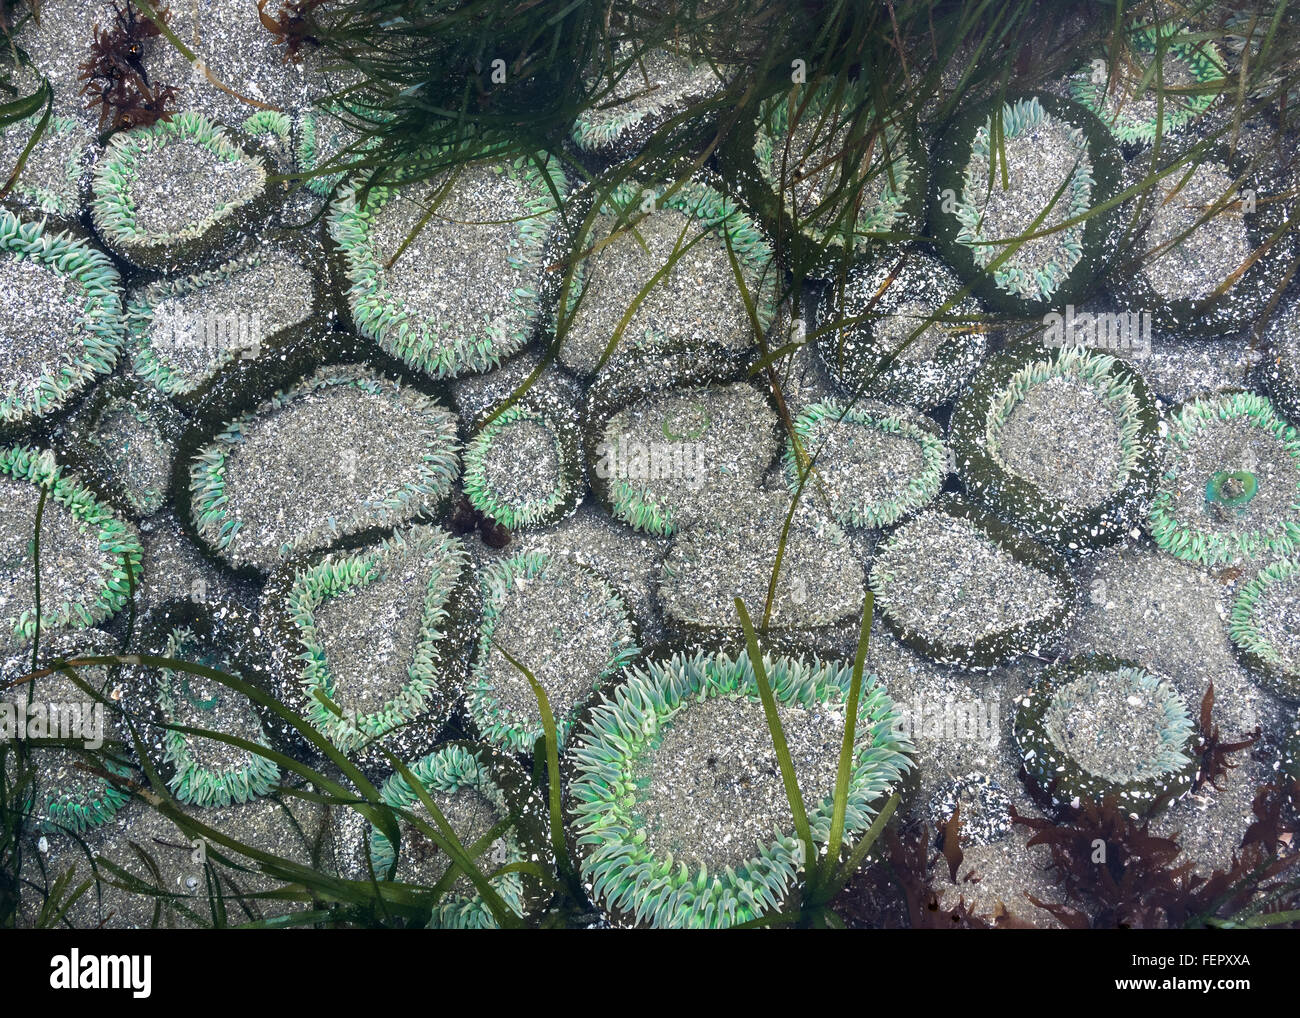 Sand-covered anemones, Chesterman Beach, Tofino, British Columbia Stock Photo